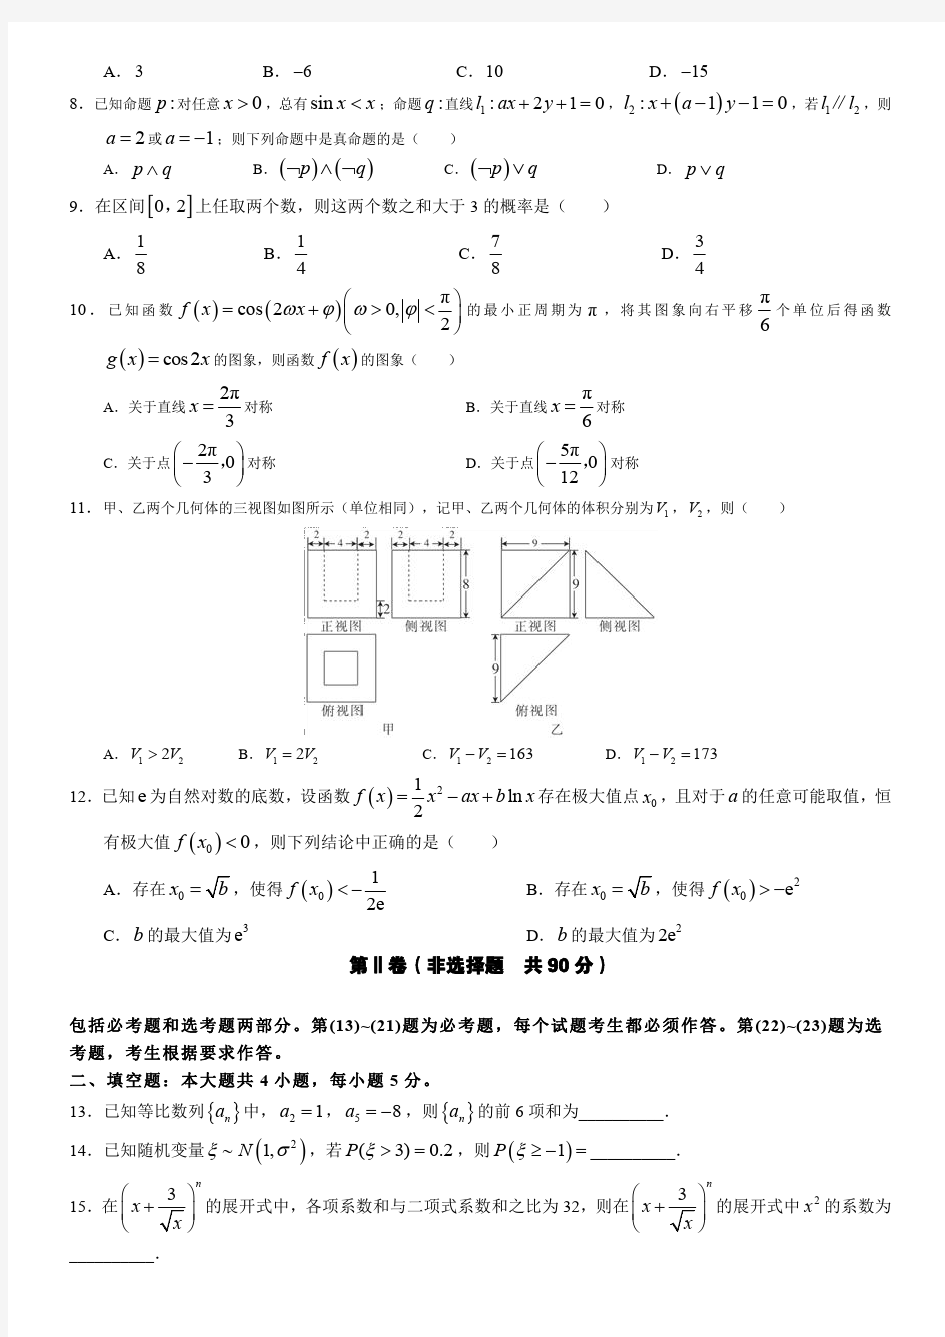 四川省南充高中高2017级3月网 上考试数学理科试卷